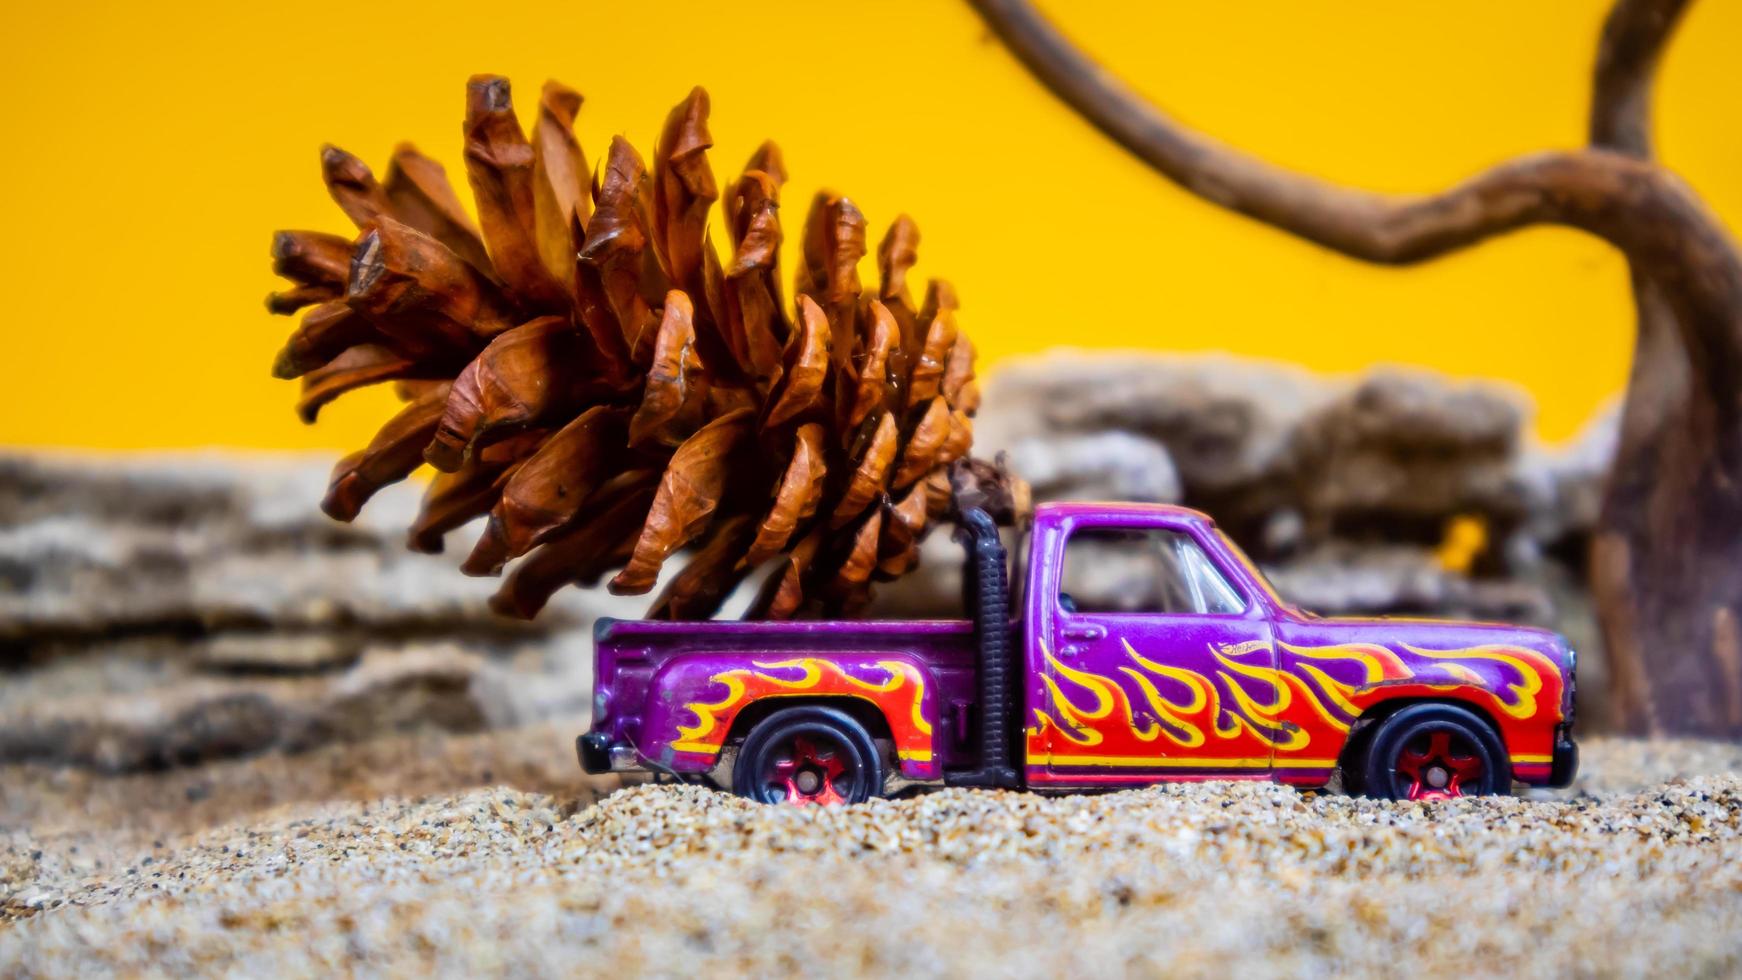 coche de juguete que transporta piñas sobre un fondo naranja foto